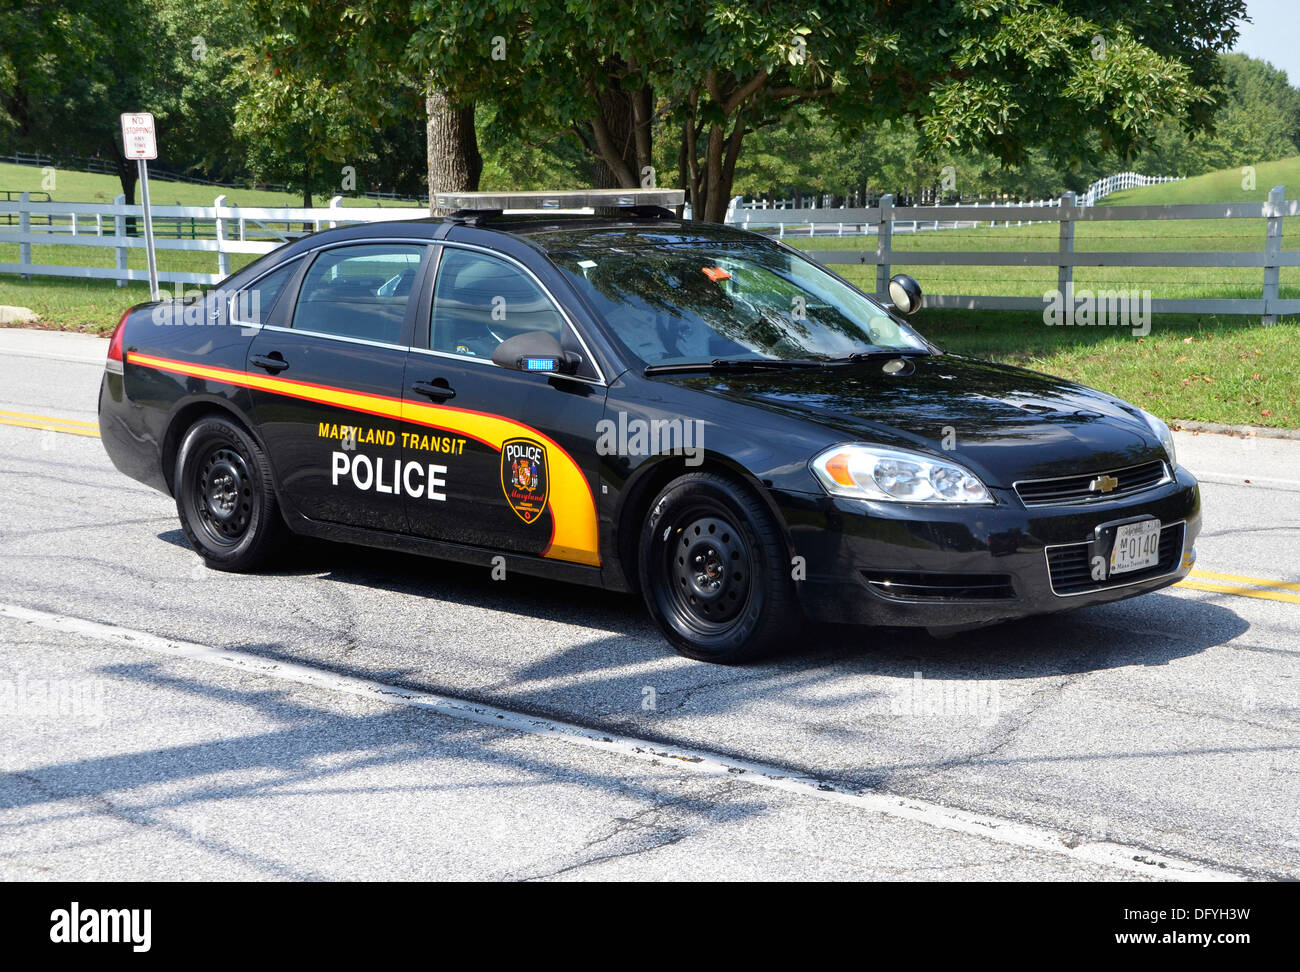 Maryland Transit police cruiser Stock Photo